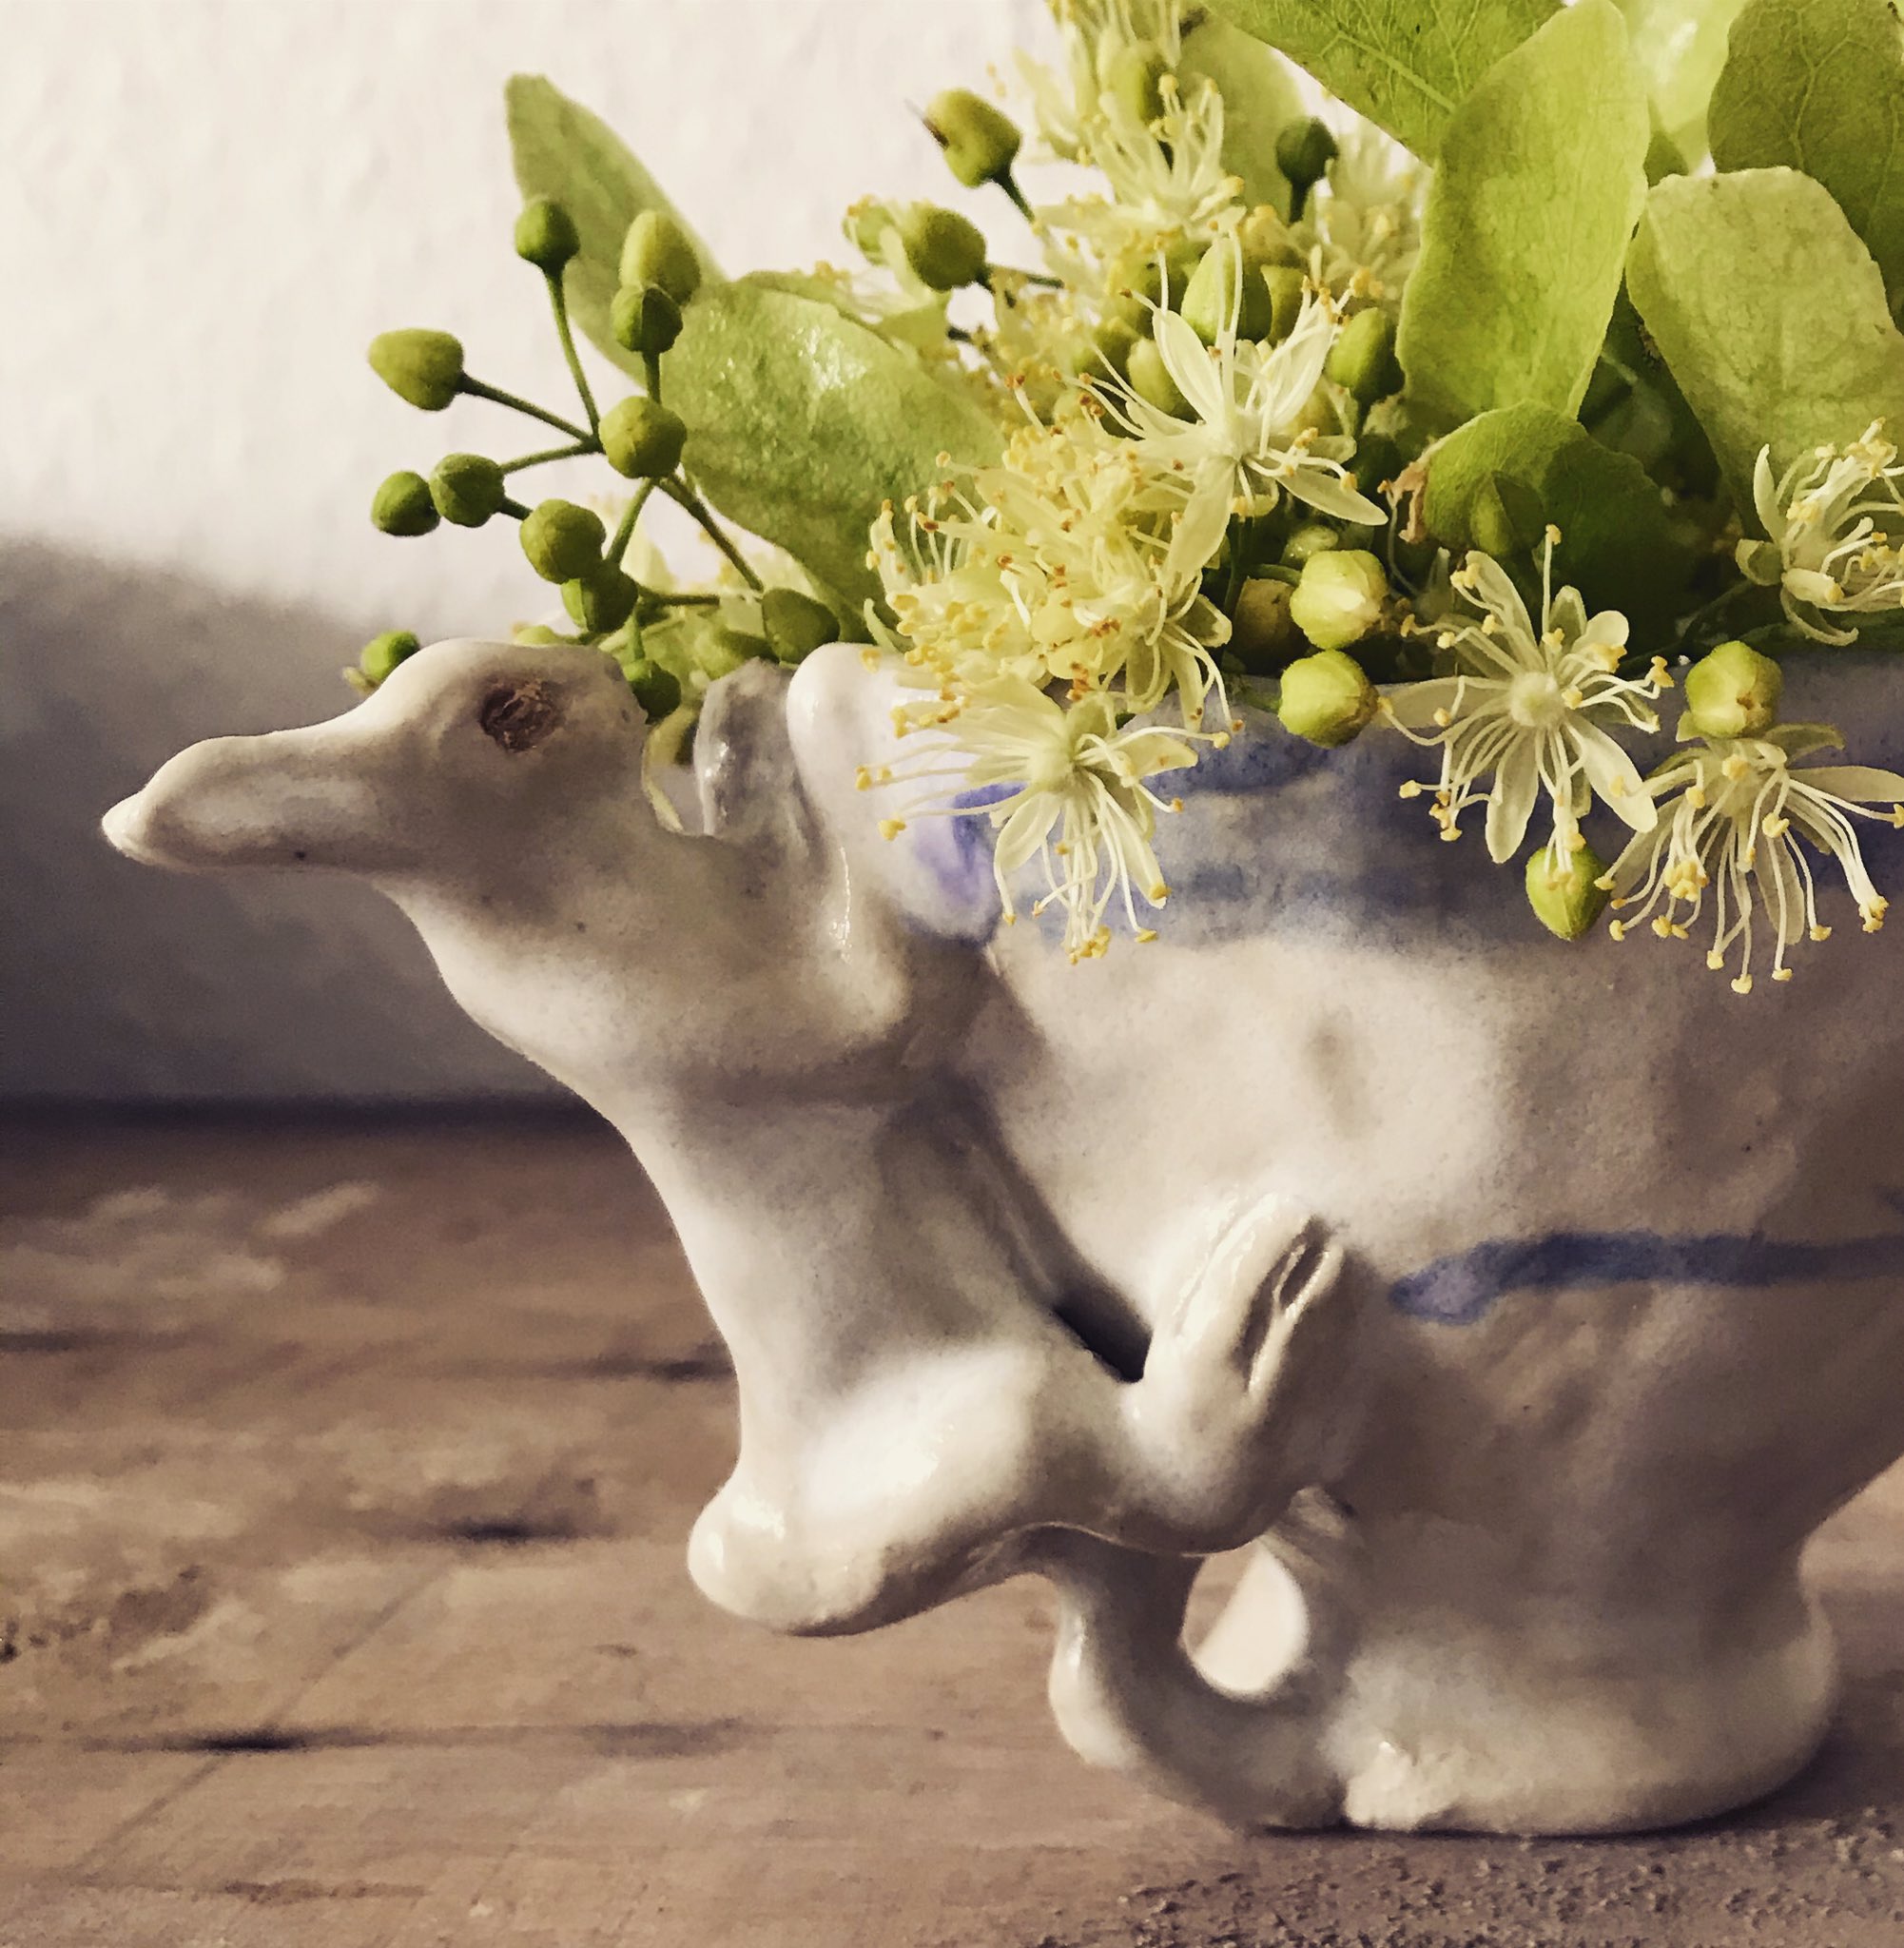 Michiyo Yamashita Linden Bunny Ceramics 菩提樹 の 花 と 葉 うさぎ 陶器 これで ハーブティー を作ります